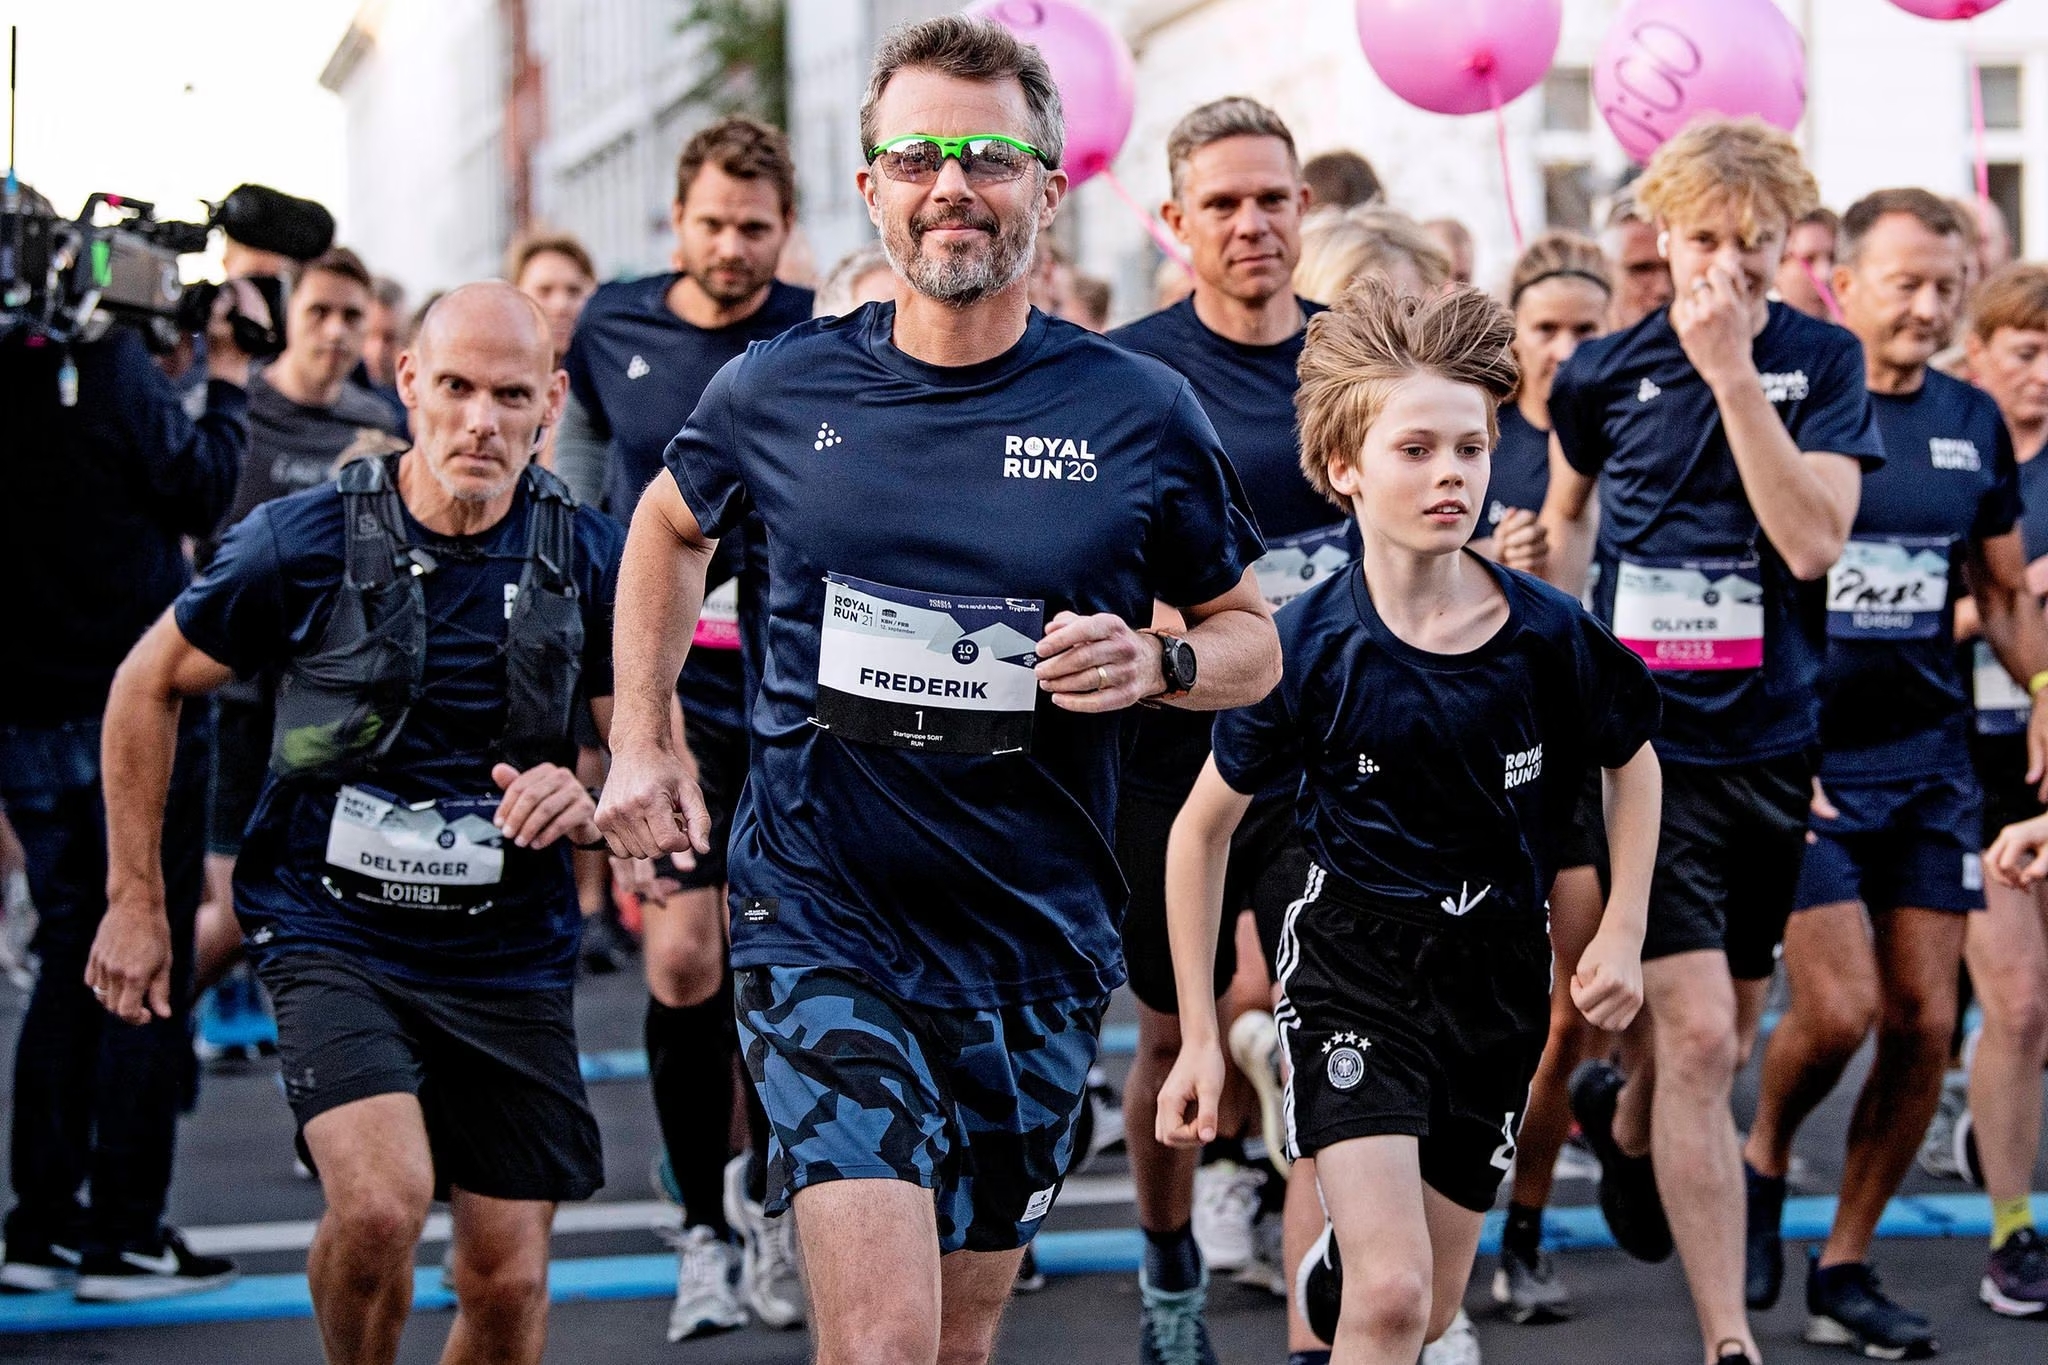 Re Federico X è un appassionato corridore. Ogni anno partecipa alla competizione Royal Run, una corsa per le strade di Copenaghen che ha lo scopo di incentivare l'attività sportiva di tutte le persone, indipendentemente dalla loro preparazione atletica.